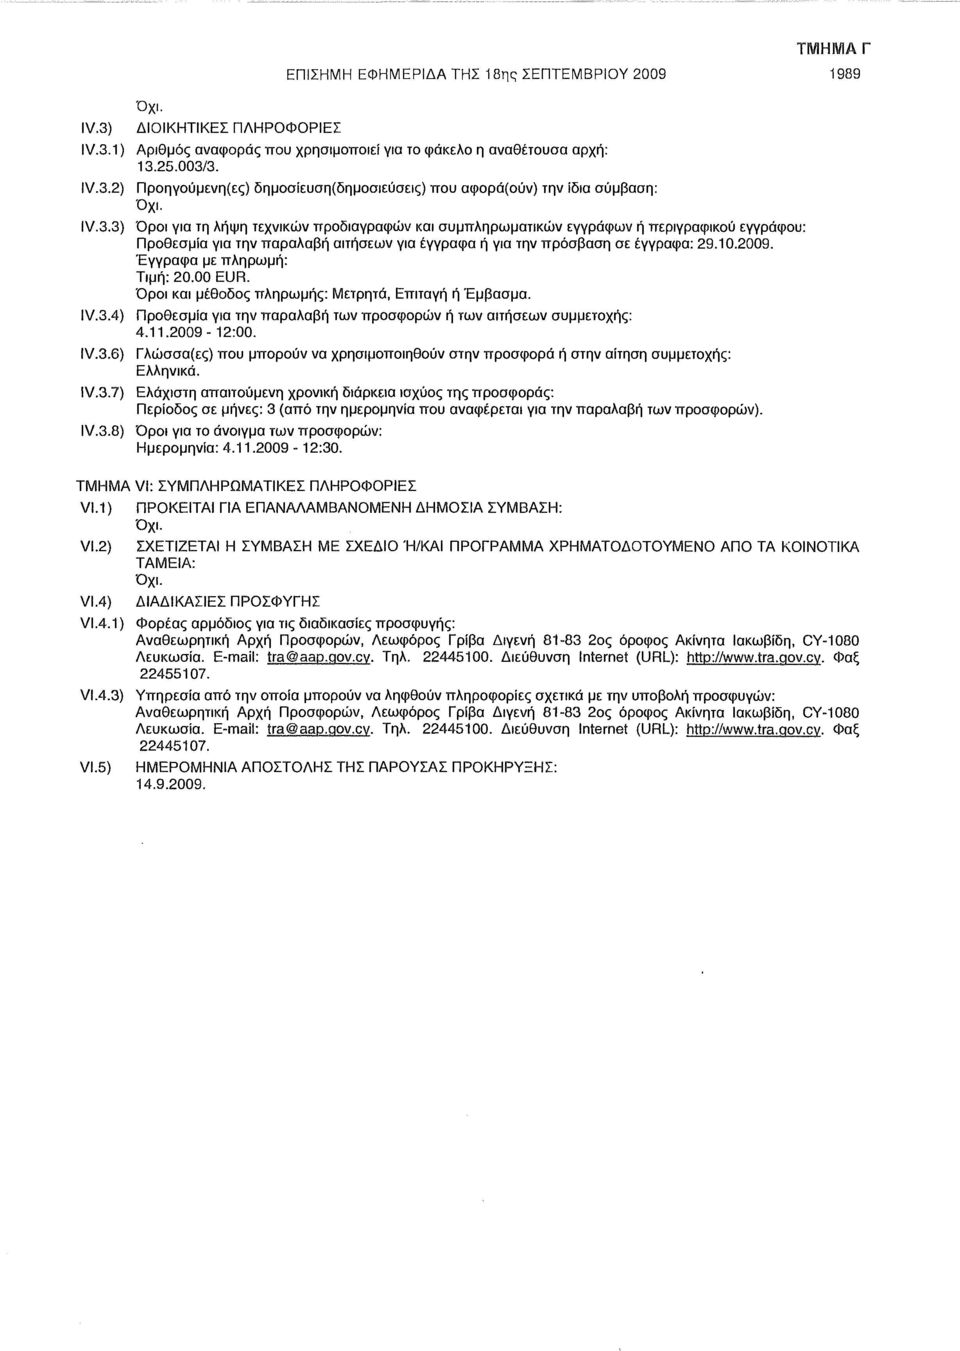 Έγγραφα με πληρωμή: Τιμή: 20.00 EUR. Όροι και μέθοδος πληρωμής: Μετρητά, Επιταγή ή Έμβασμα. IV.3.4) Προθεσμία για την παραλαβή των προσφορών ή των αιτήσεων συμμετοχής: 4.11.2009-12:00. IV.3.6) Γλώσσα(ες) που μπορούν να χρησιμοποιηθούν στην προσφορά ή στην αίτηση συμμετοχής: Ελληνικά.